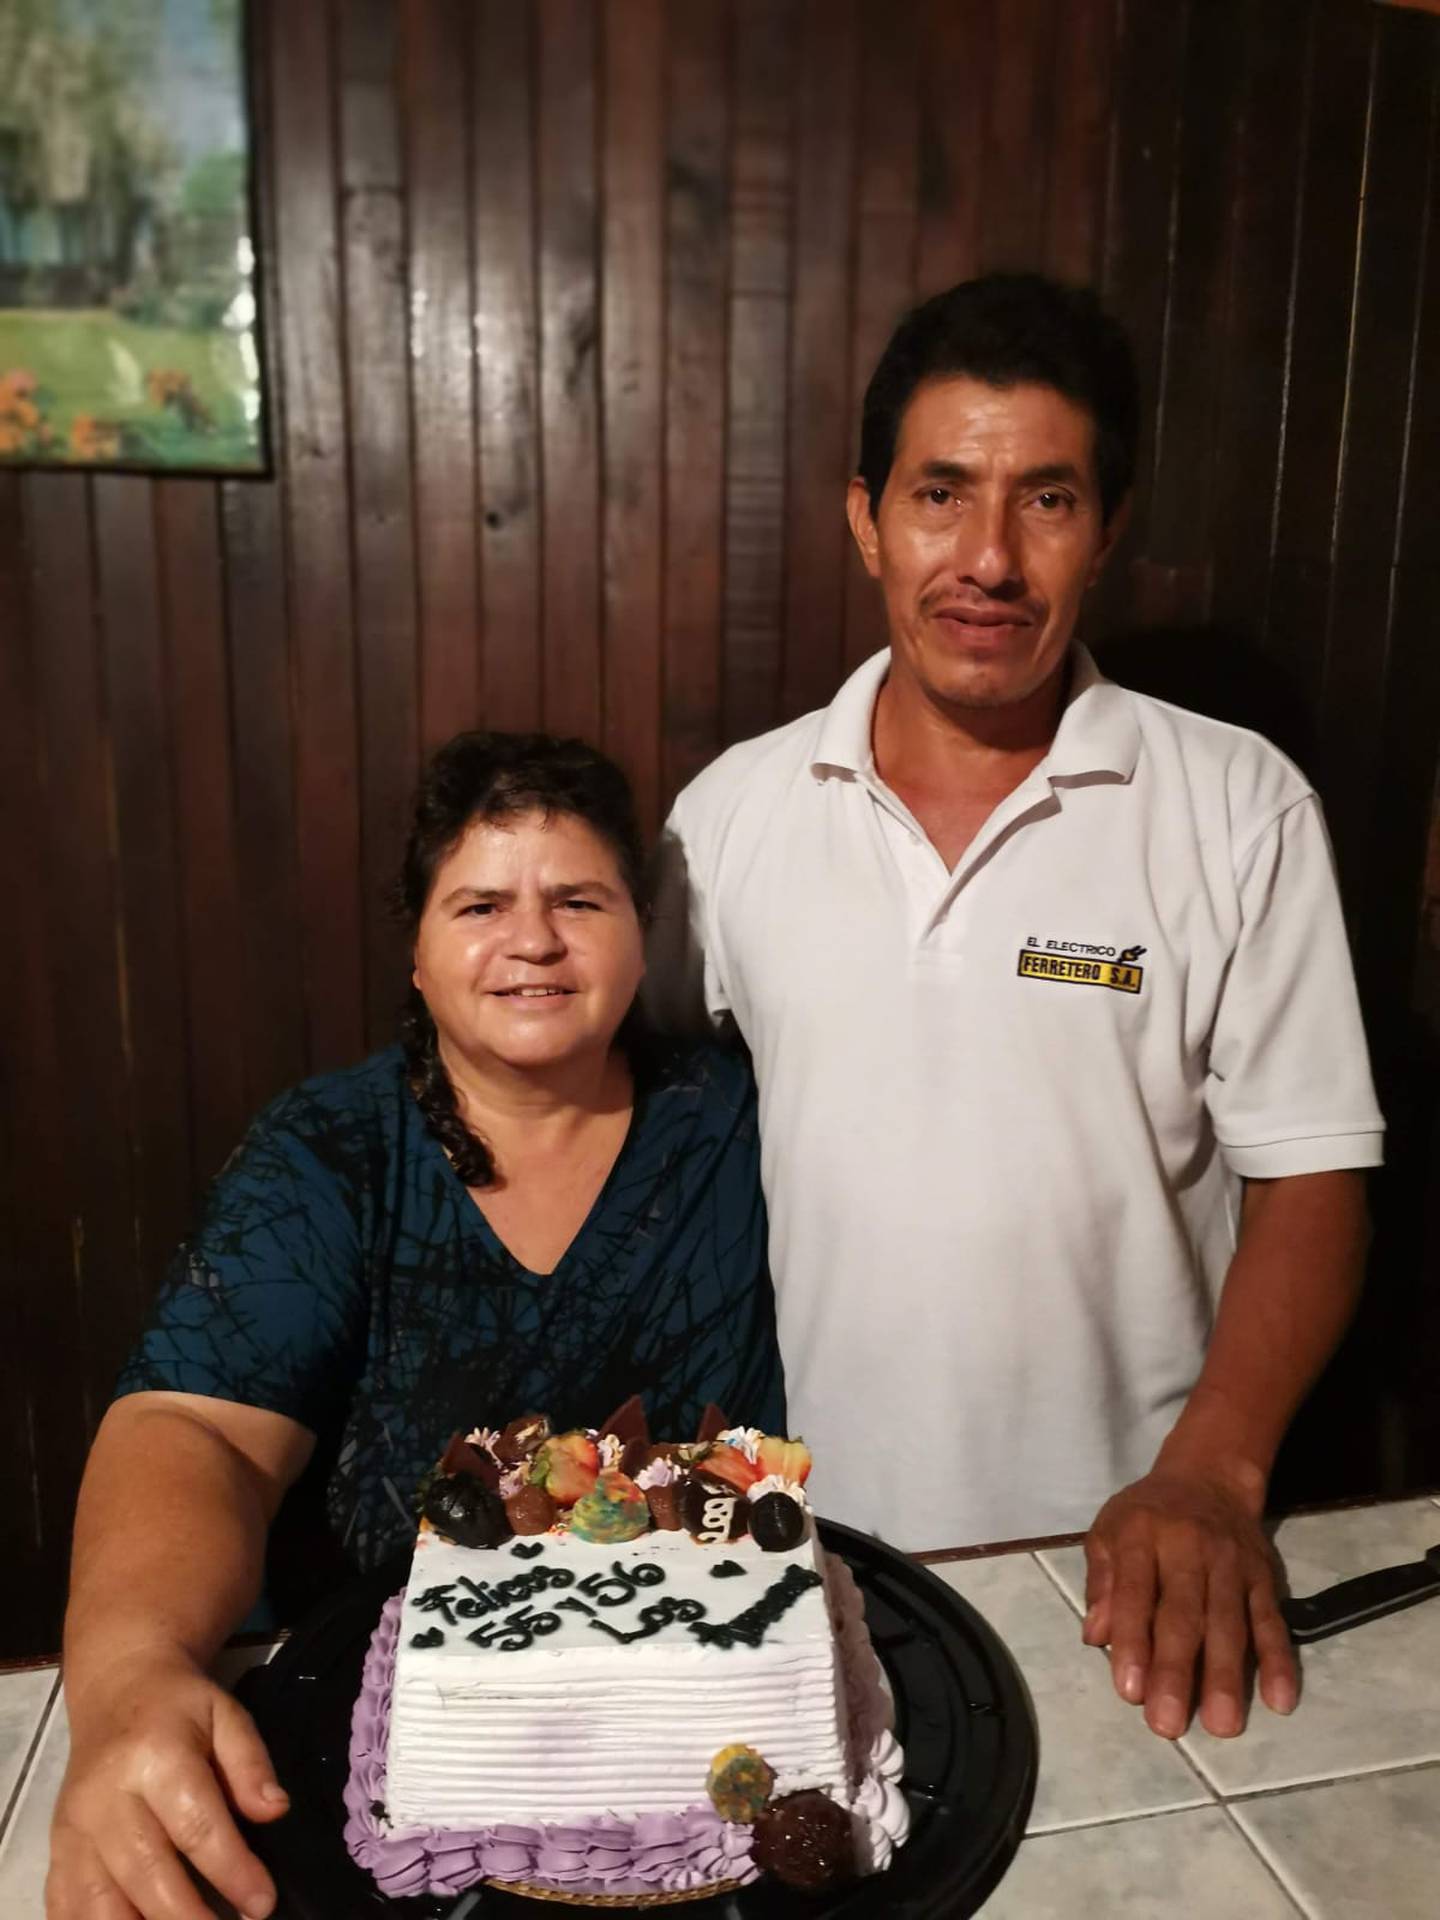 Doña Rosibel López Mendoza y don José Antonio Campos Palacios, pareja que falleció en accidente de tránsito en Río Frío. Foto cortesía Jorge Campos.